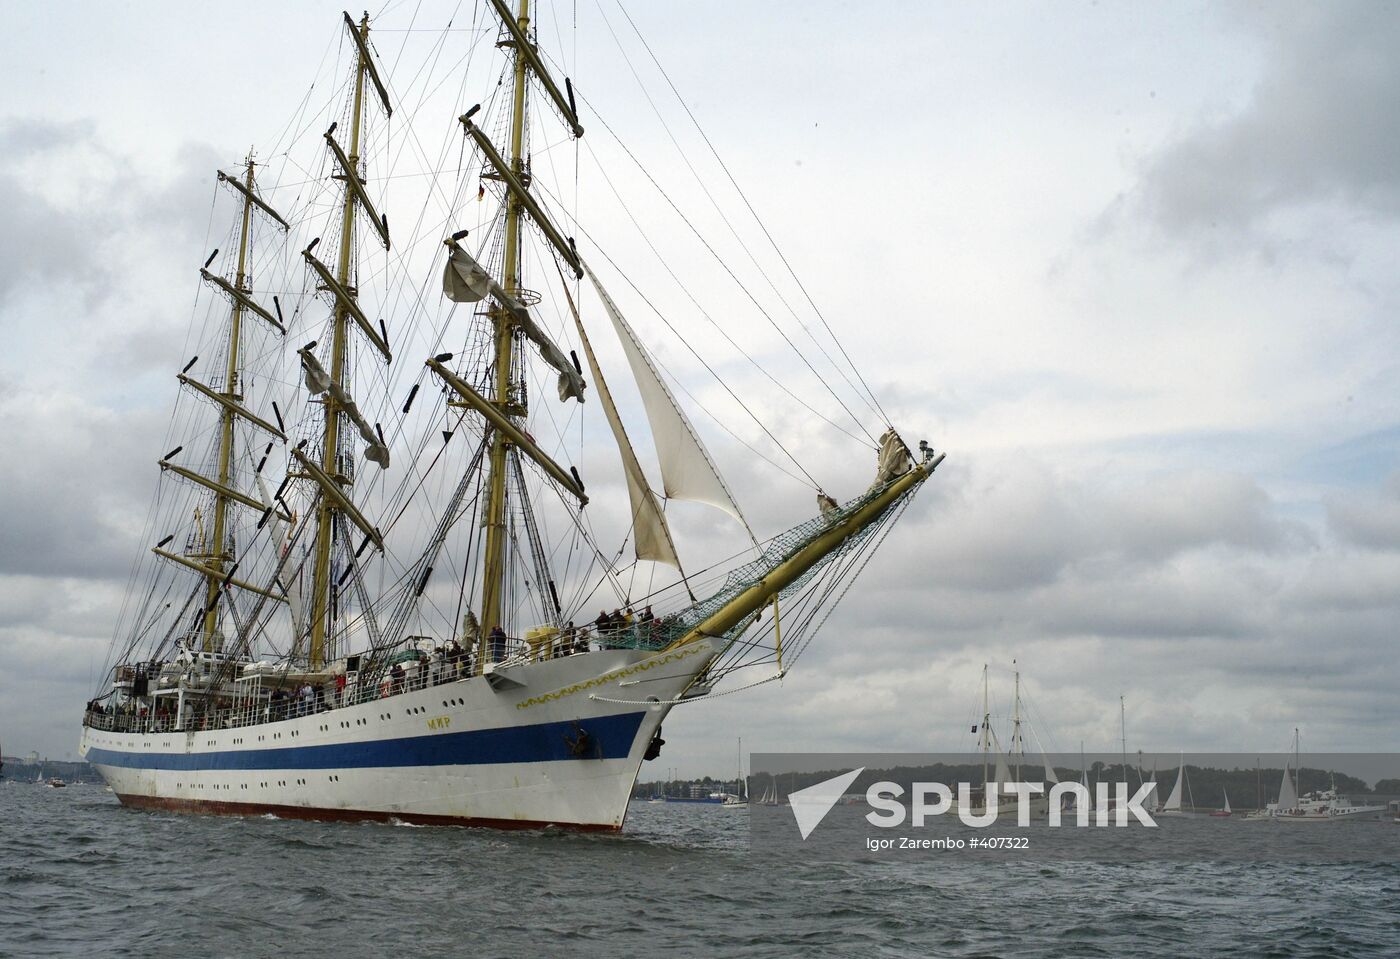 Tall Ships Parade at Kiel Week annual sailing event